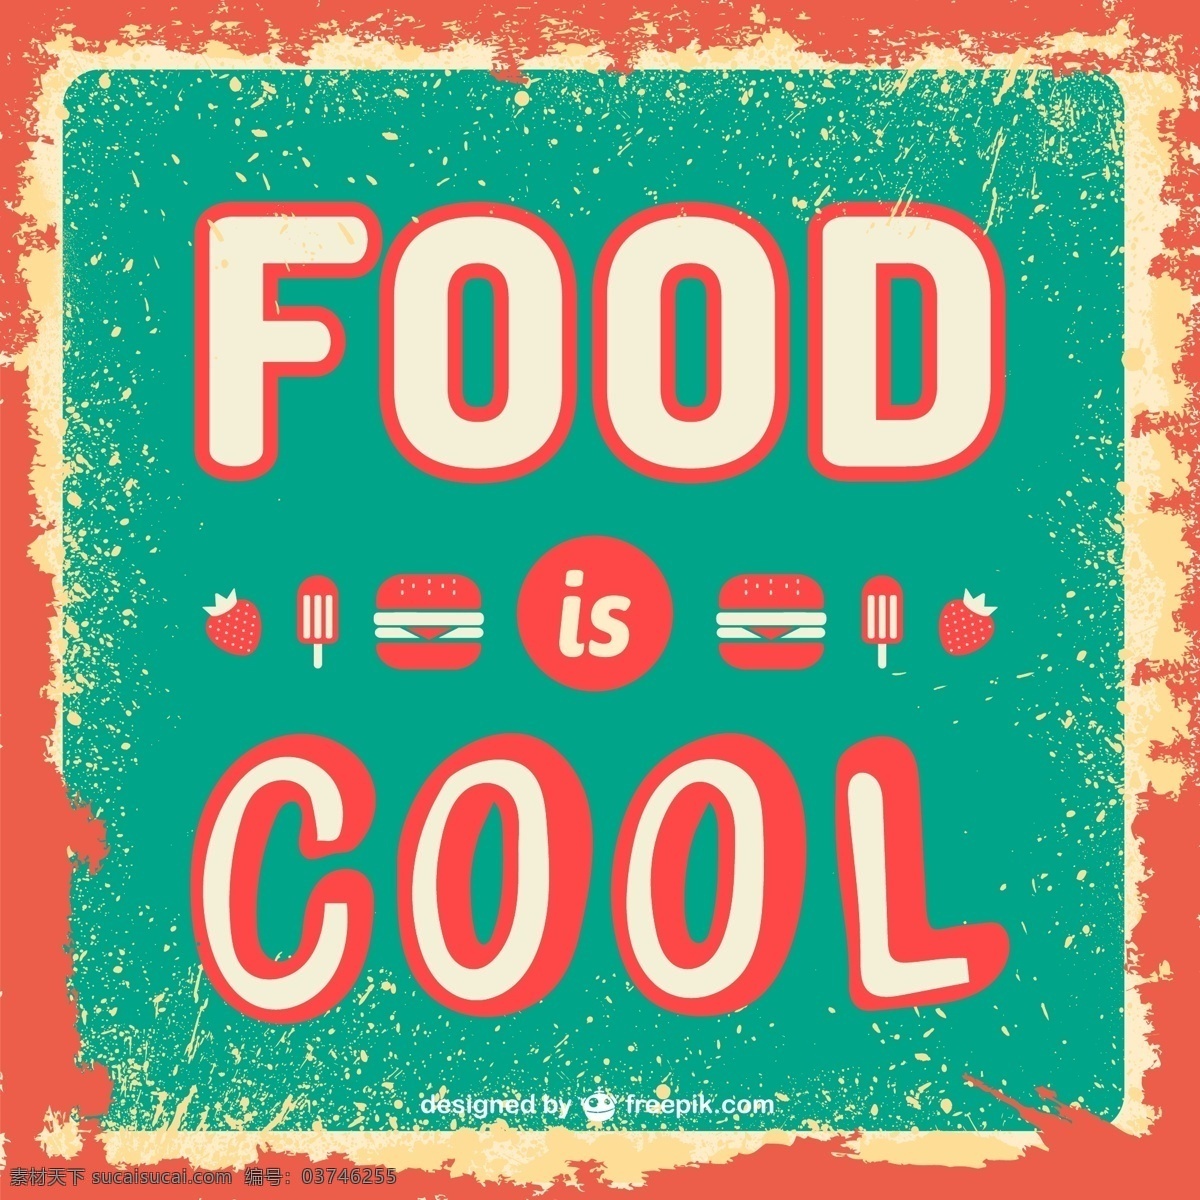 食物 凉 复古 模板 酿酒 食品 海报 图标 纹理 版式 垃圾 字体 板 汉堡 快餐 草莓 信件 食物图标 经典 青色 天蓝色